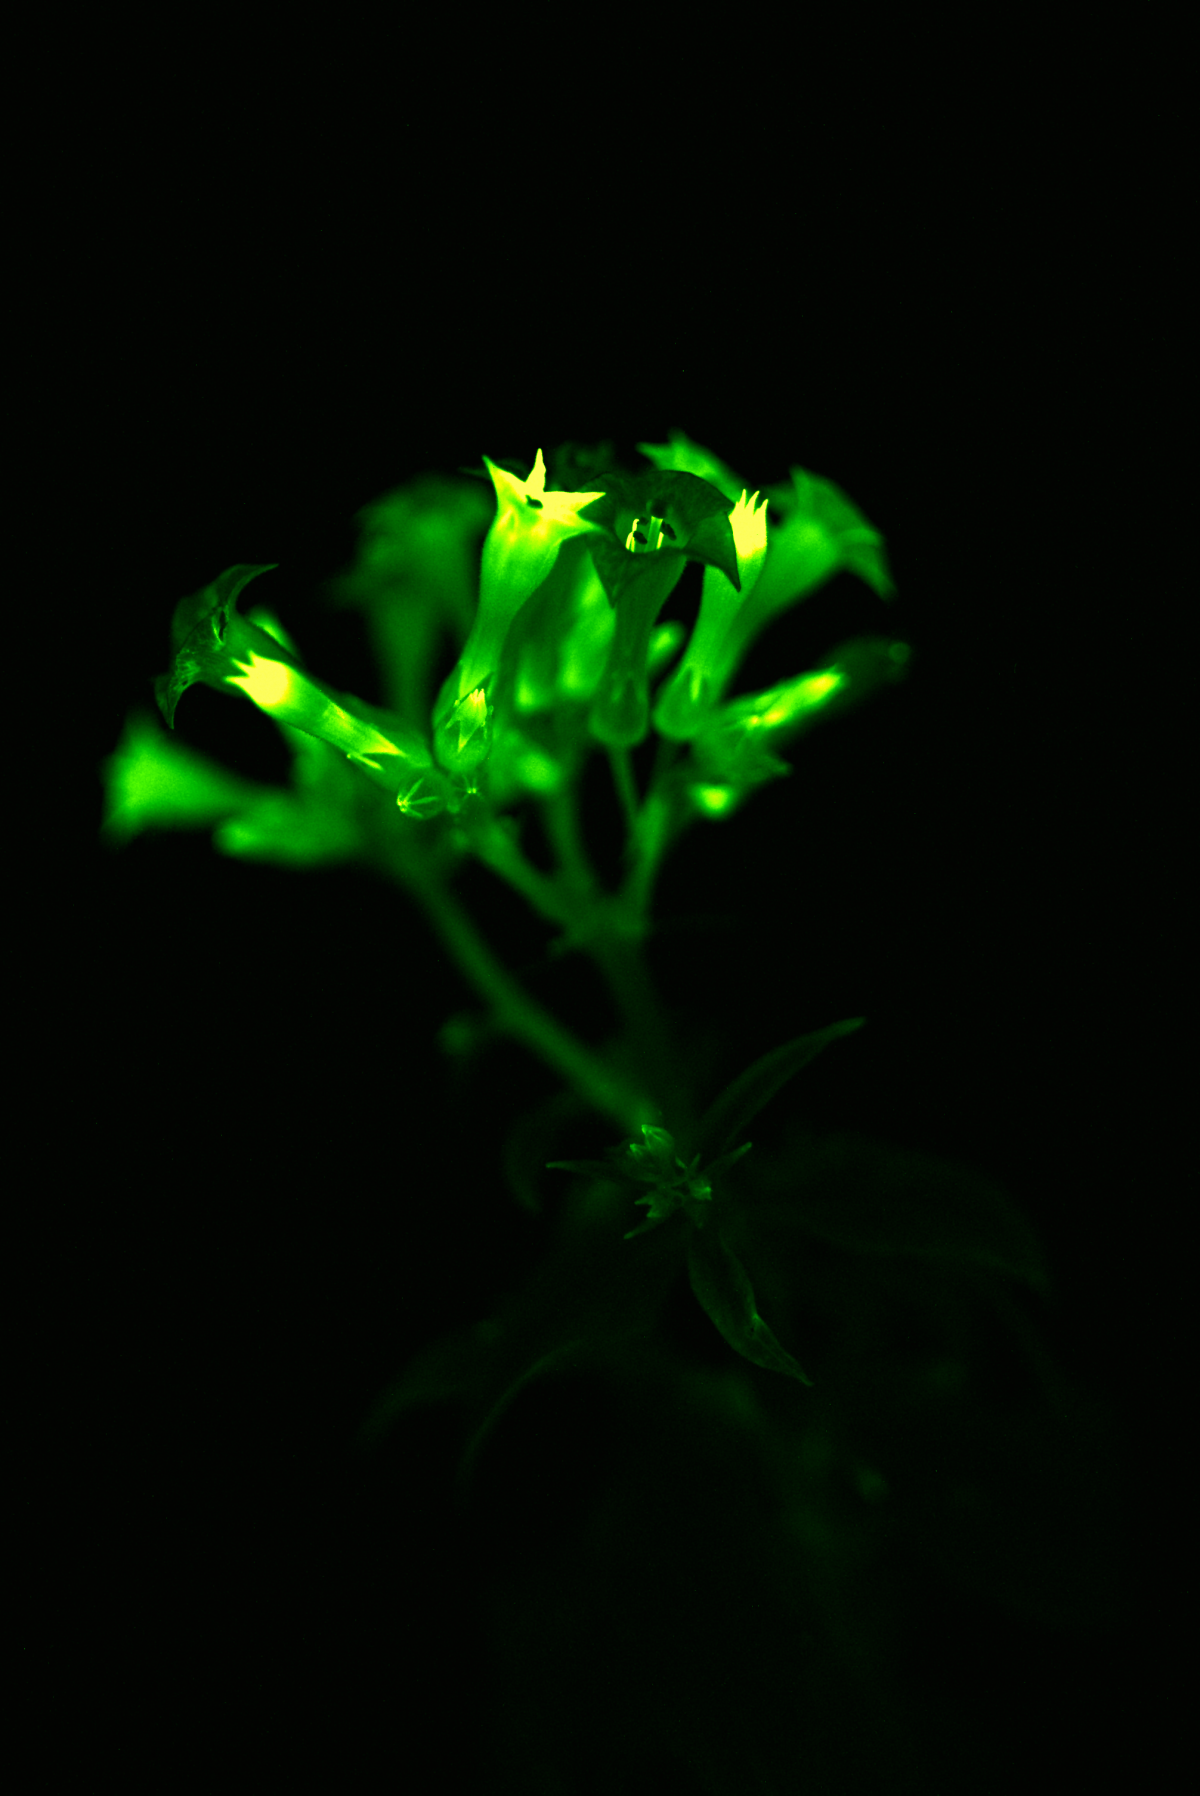 Leuchtende Blüten: Das grünliche Licht wurde in der Studie mit gewöhnlichen Kameras und Smartphones aufgenommen. Die Pflanzen erzeugen von der Keimung an kontinuierlich Licht. Die Gesundheit der Pflanzen wurde dadurch nicht beeinträchtigt.
